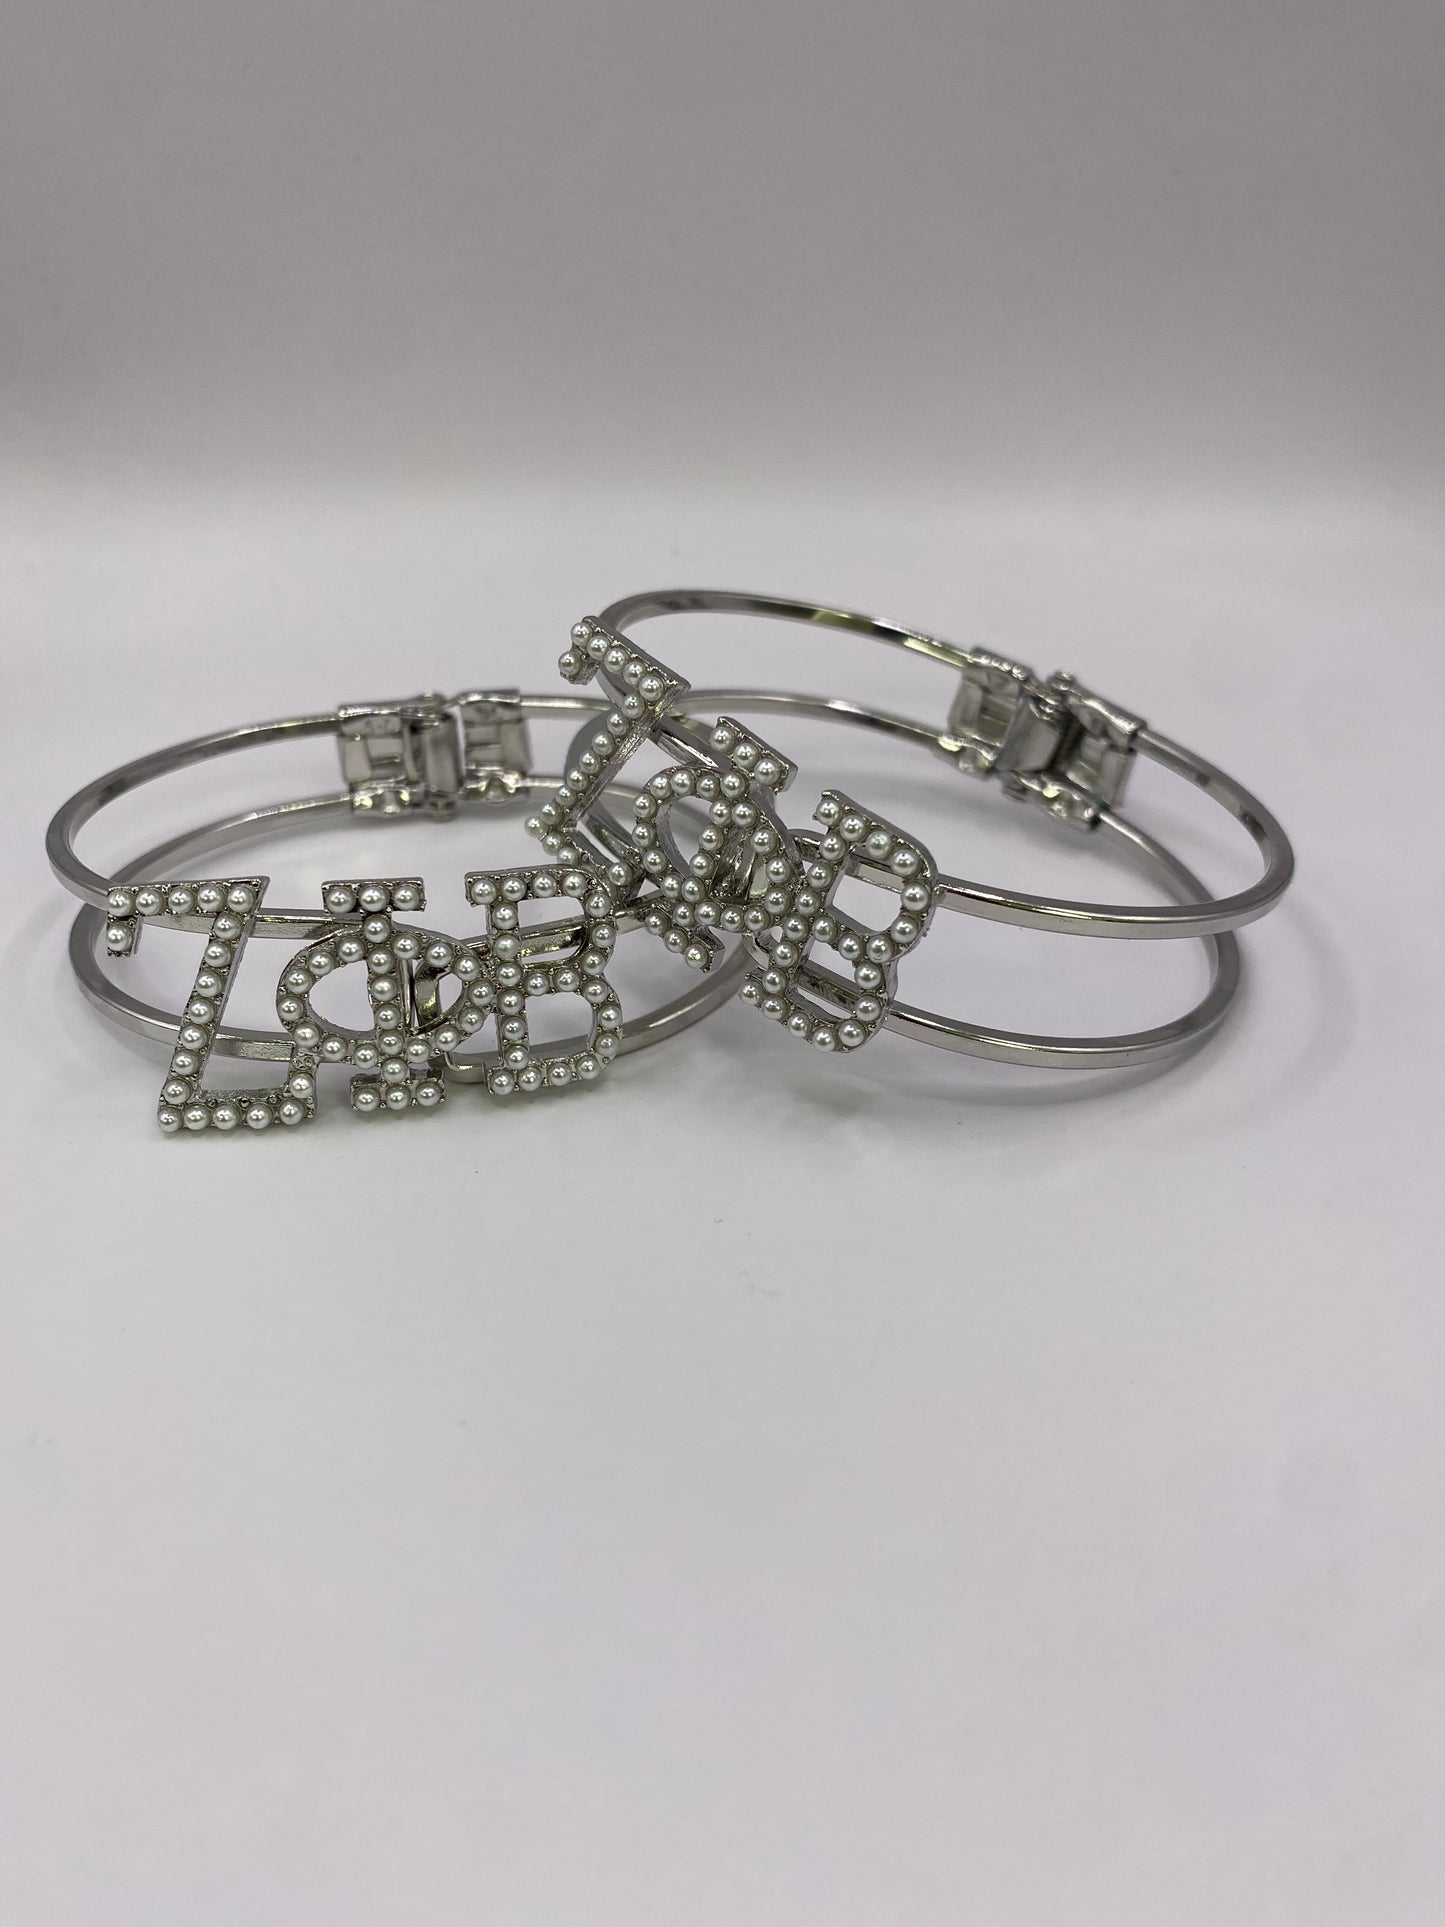 Zeta Phi Beta - blinged bracelet